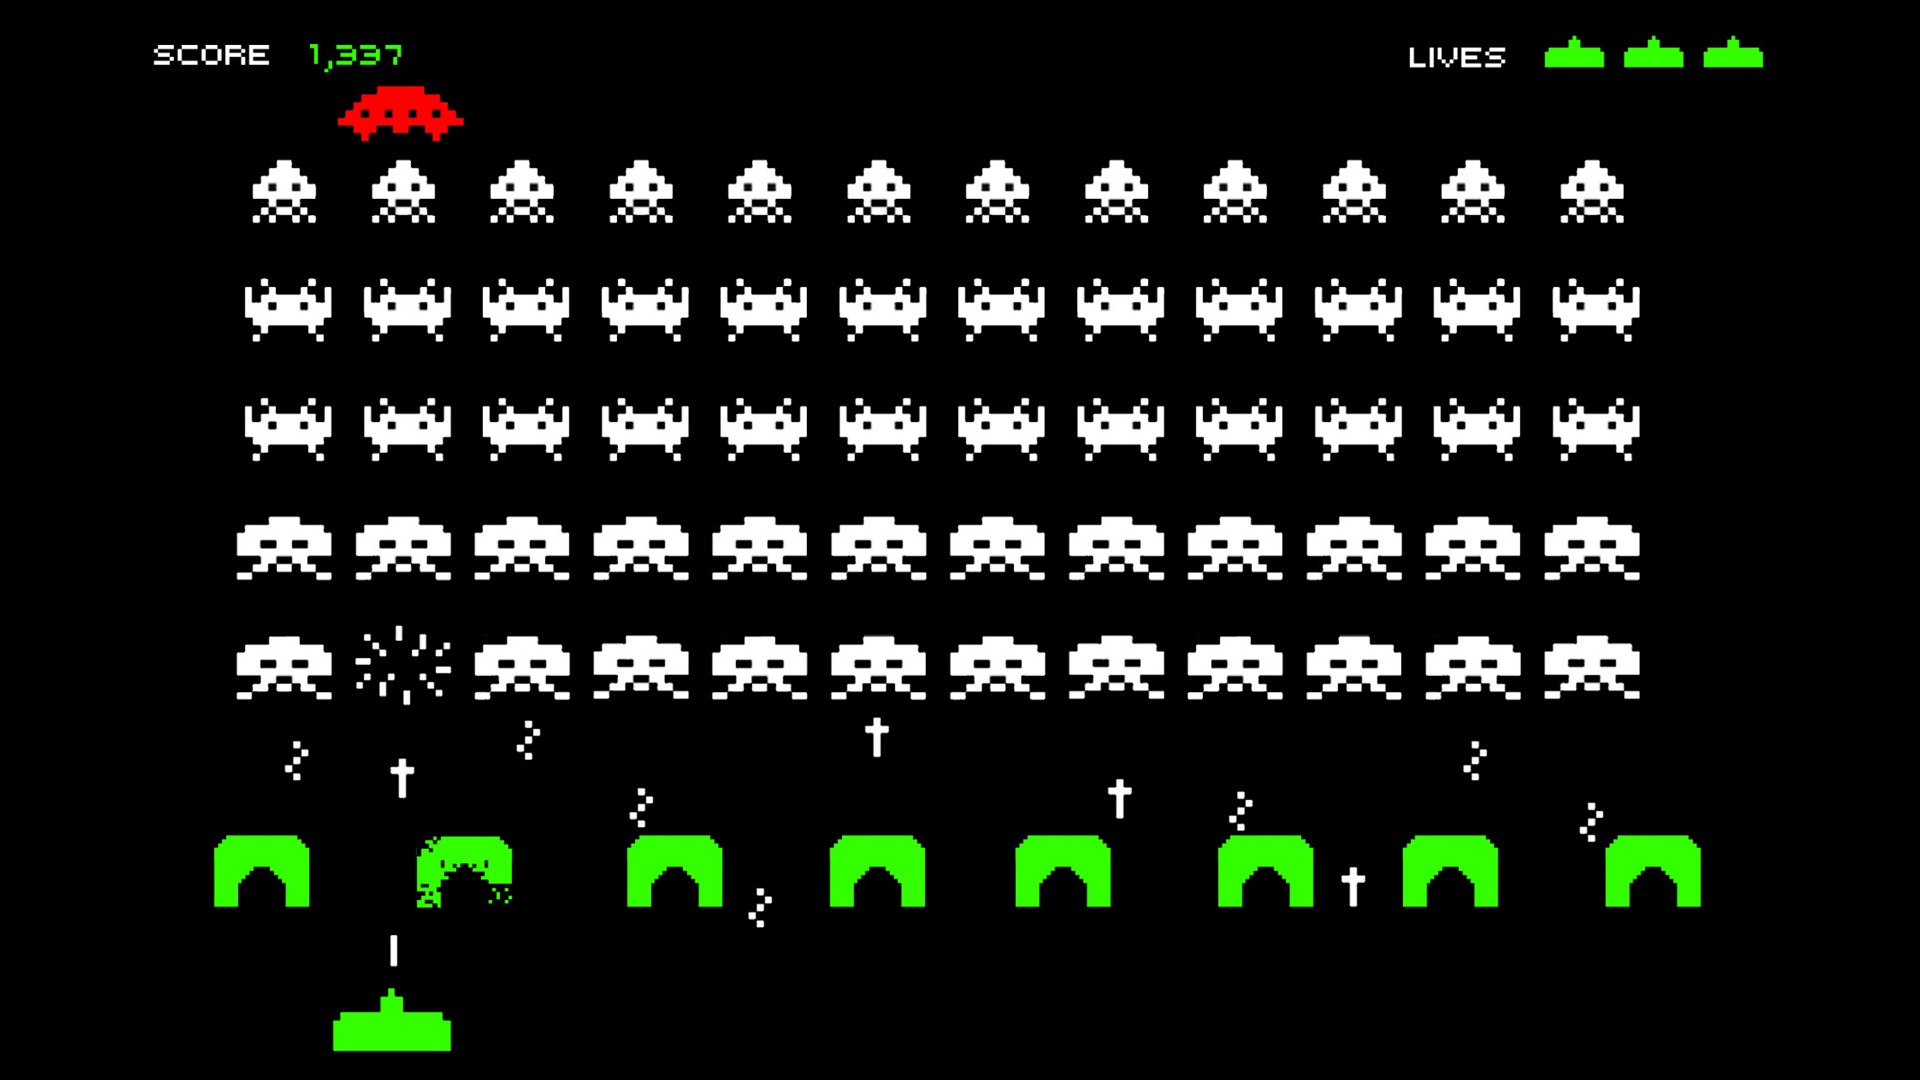 Um dos games que a inteligência artificial aprendeu a jogar sozinha foi o Space Invaders (Foto: reprodução)